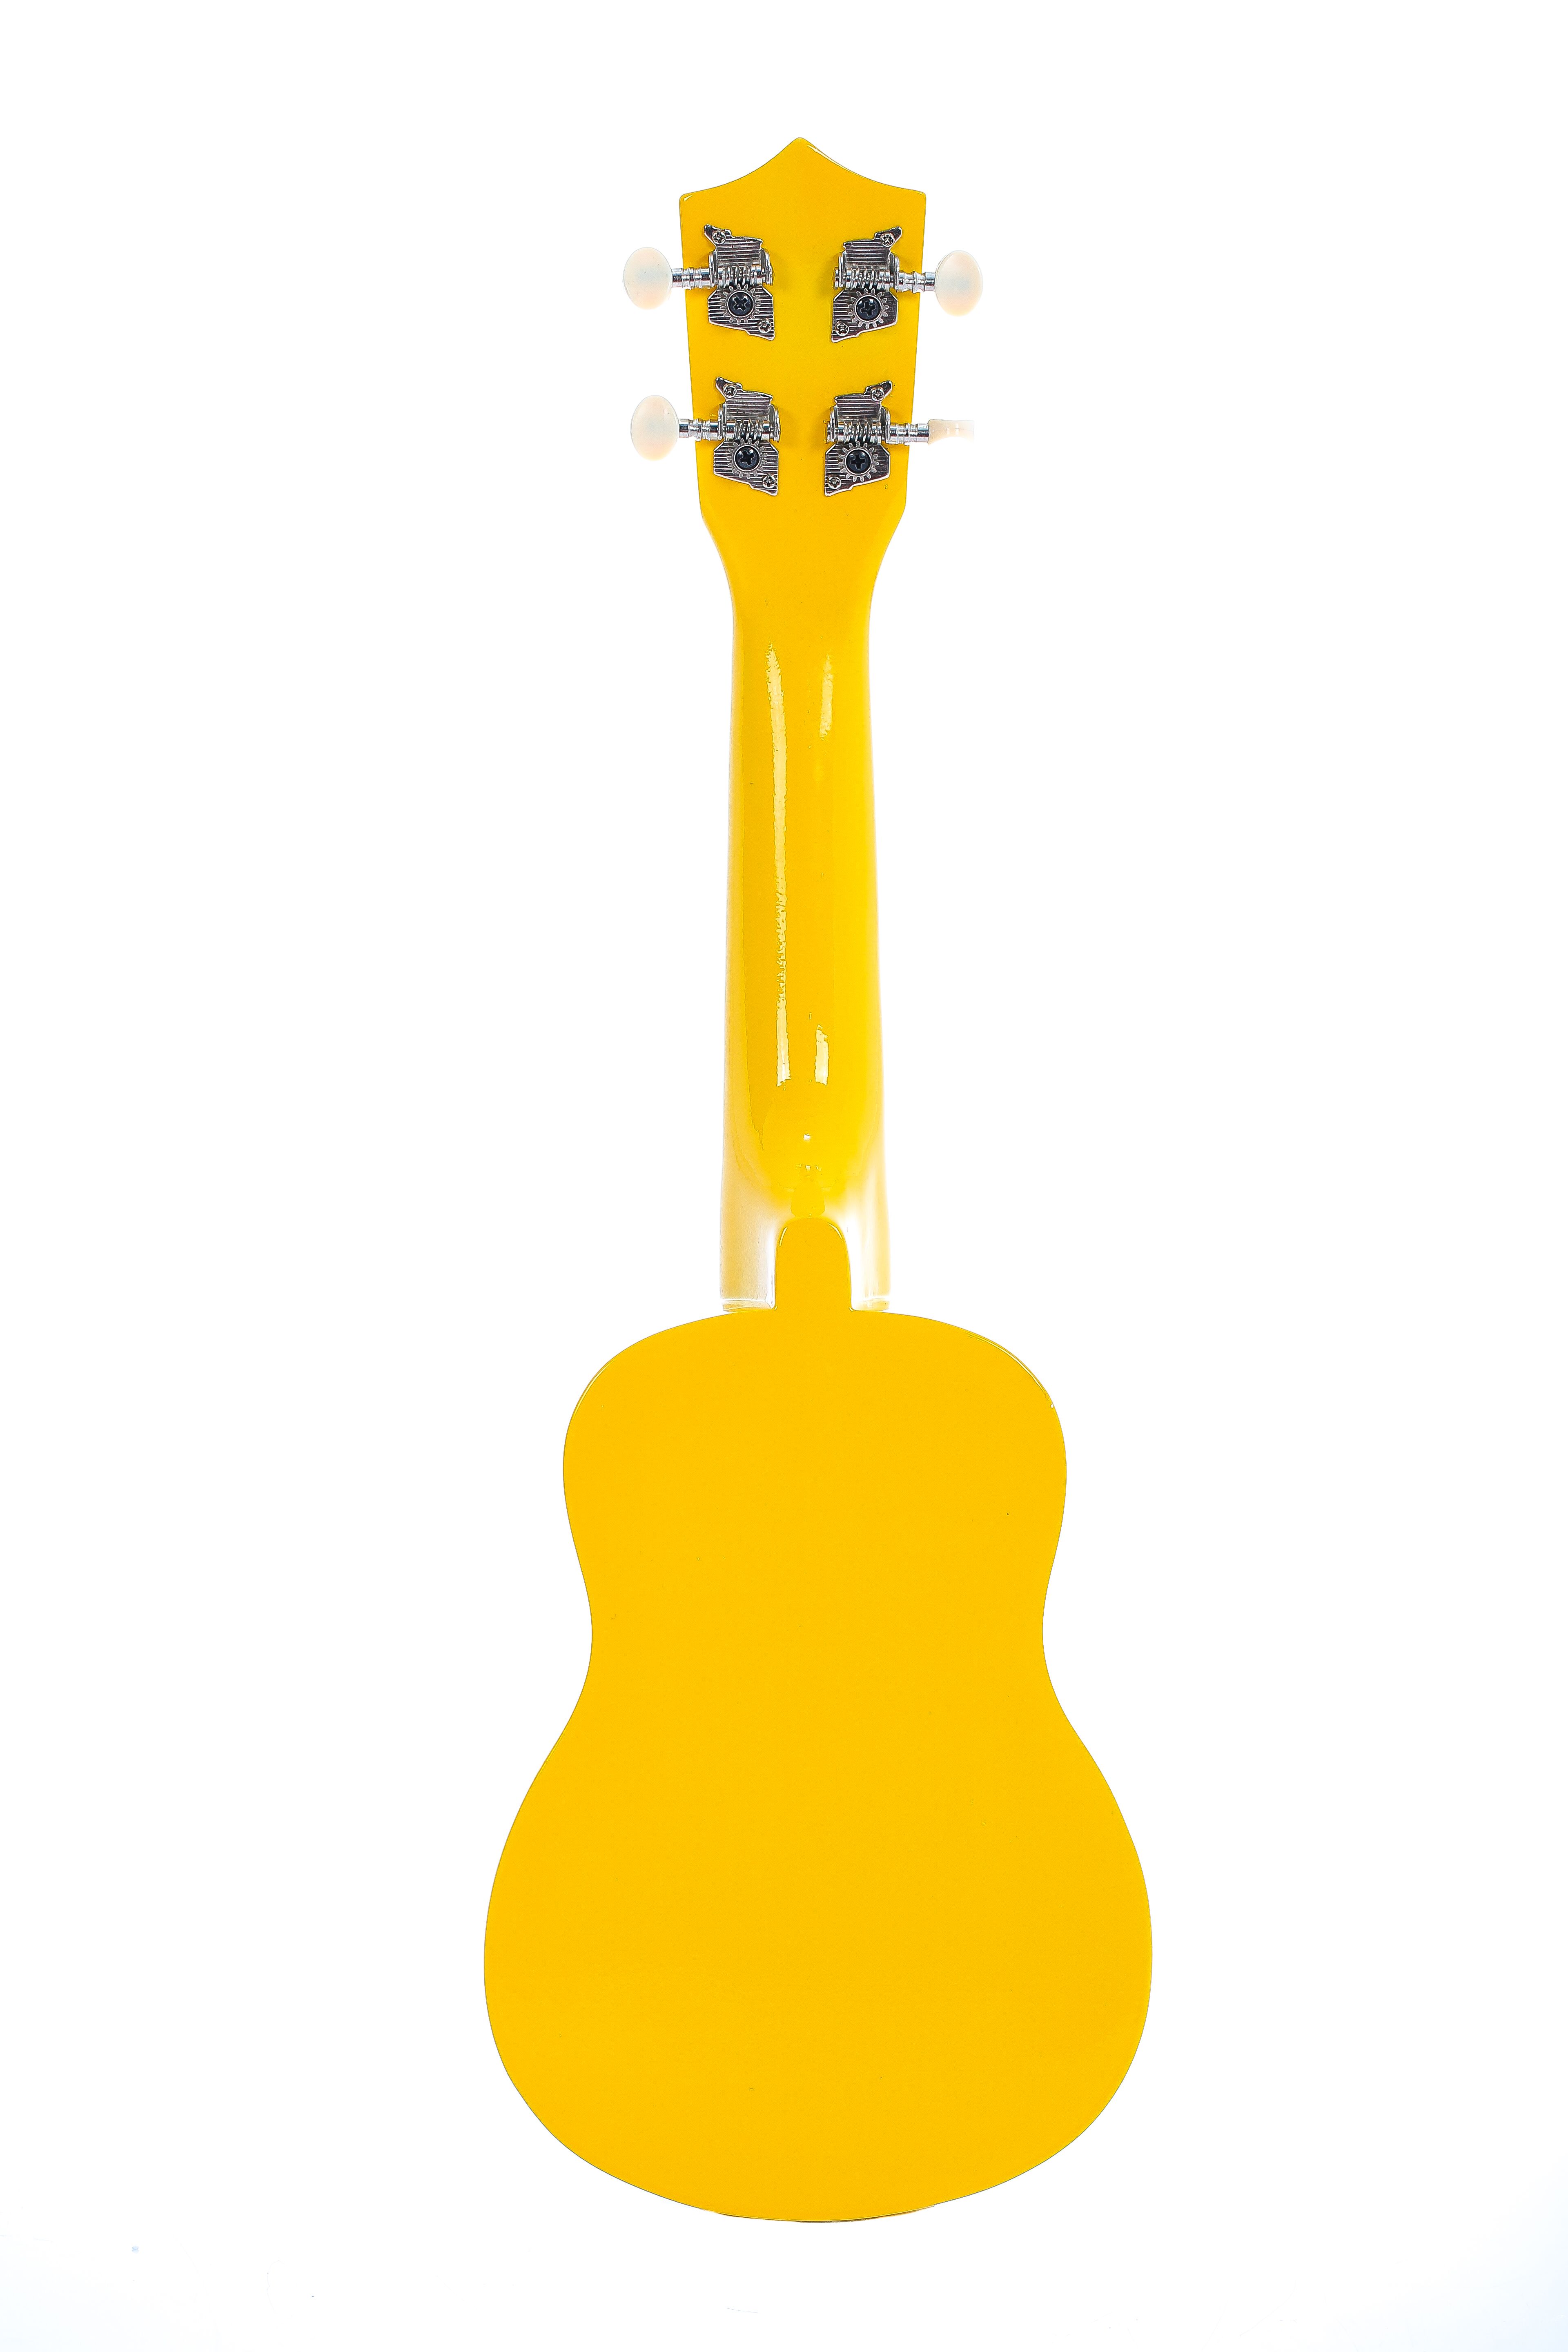 Детальная картинка товара Belucci B-21 Heart Yellow в магазине Музыкальный Мир